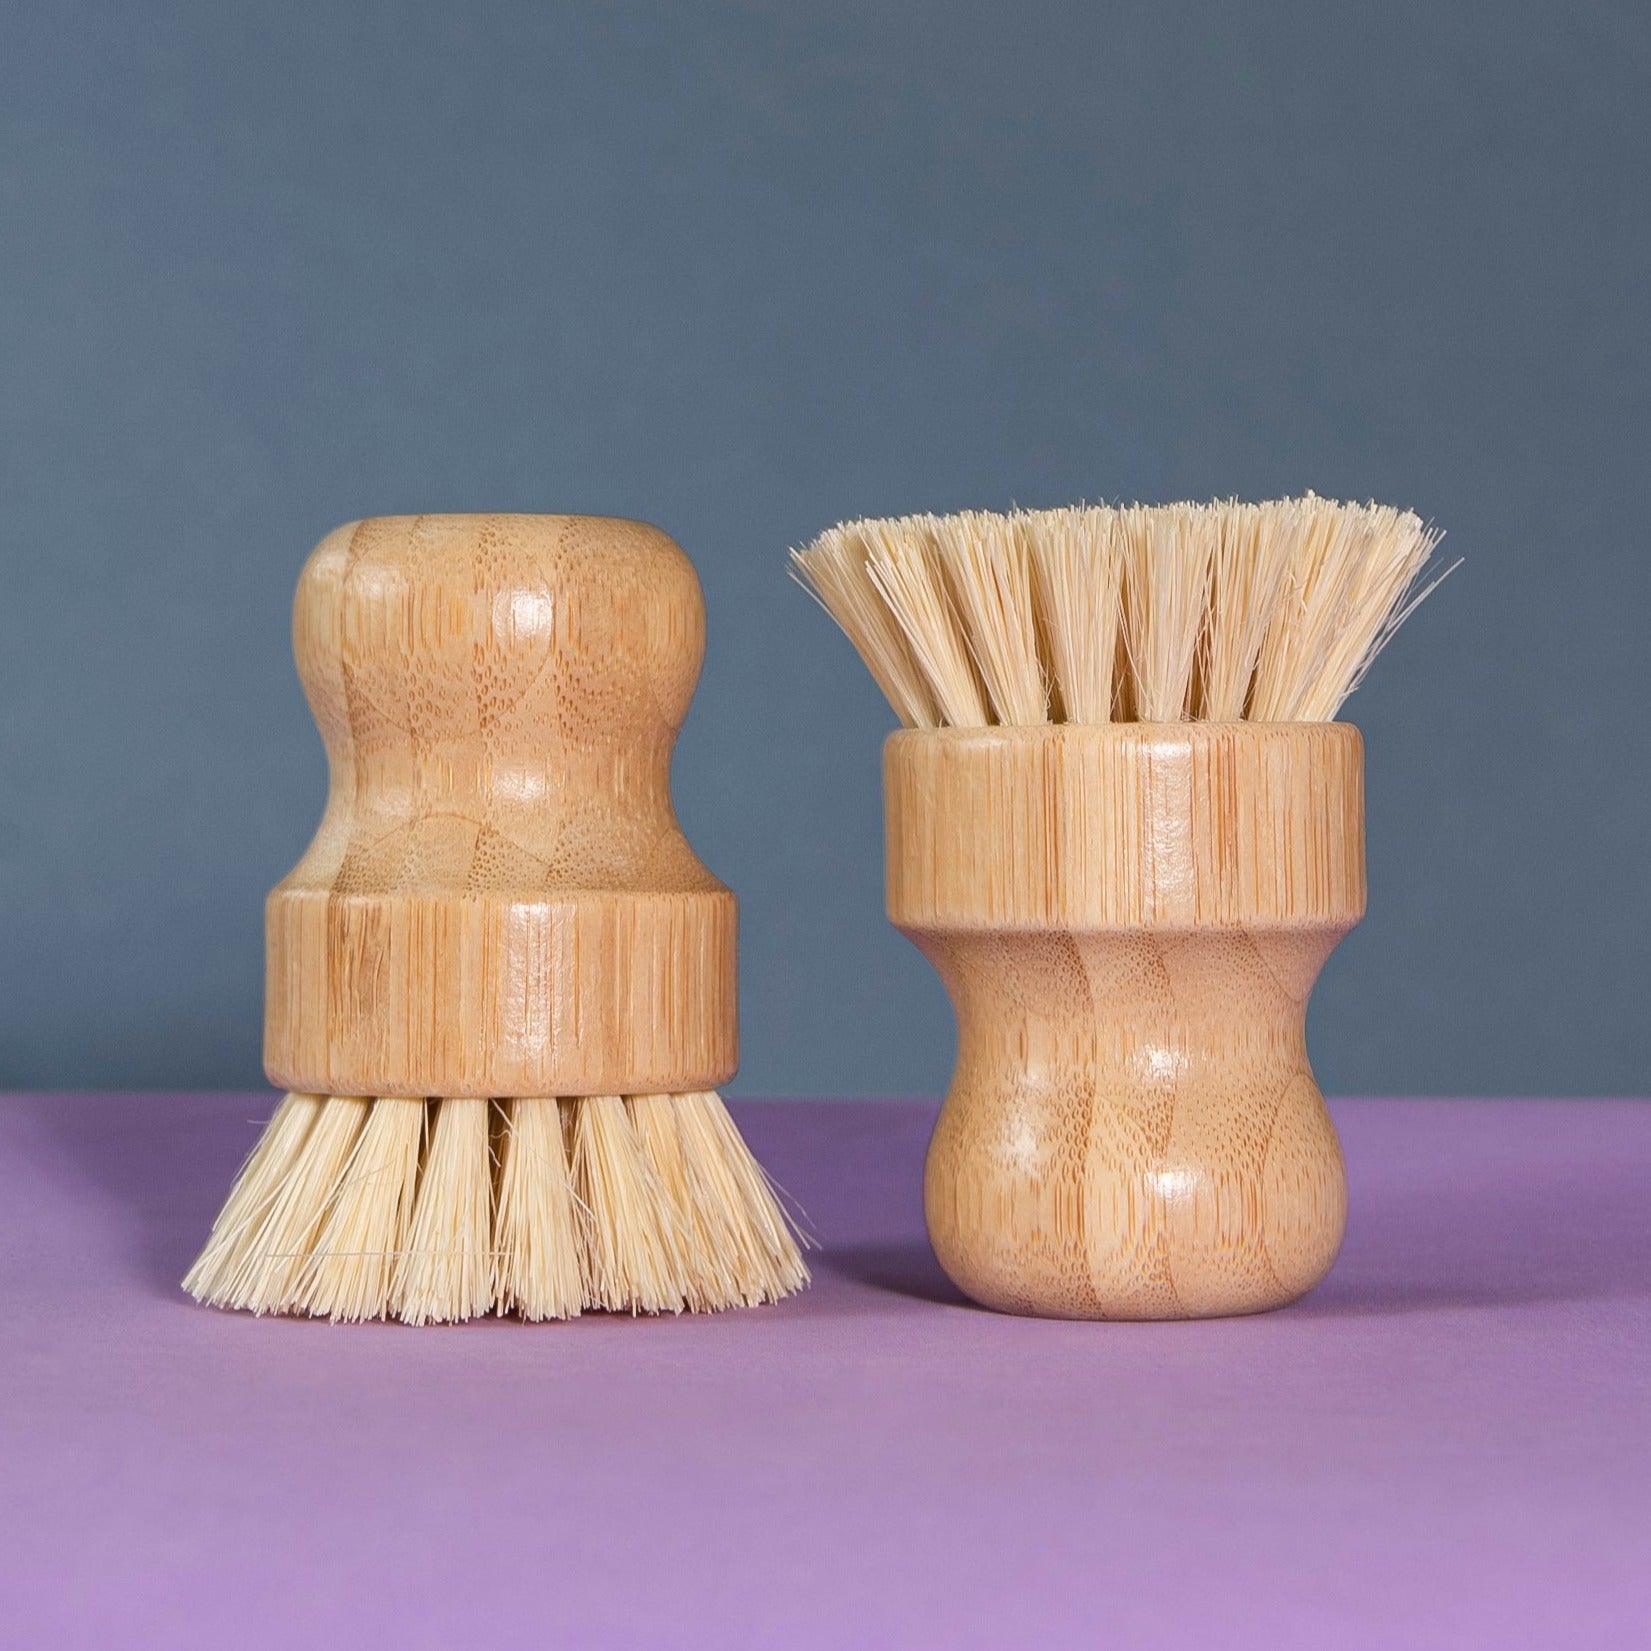 Cepillo para Verduras bambú y tampico - La Tortuga y La Liebre